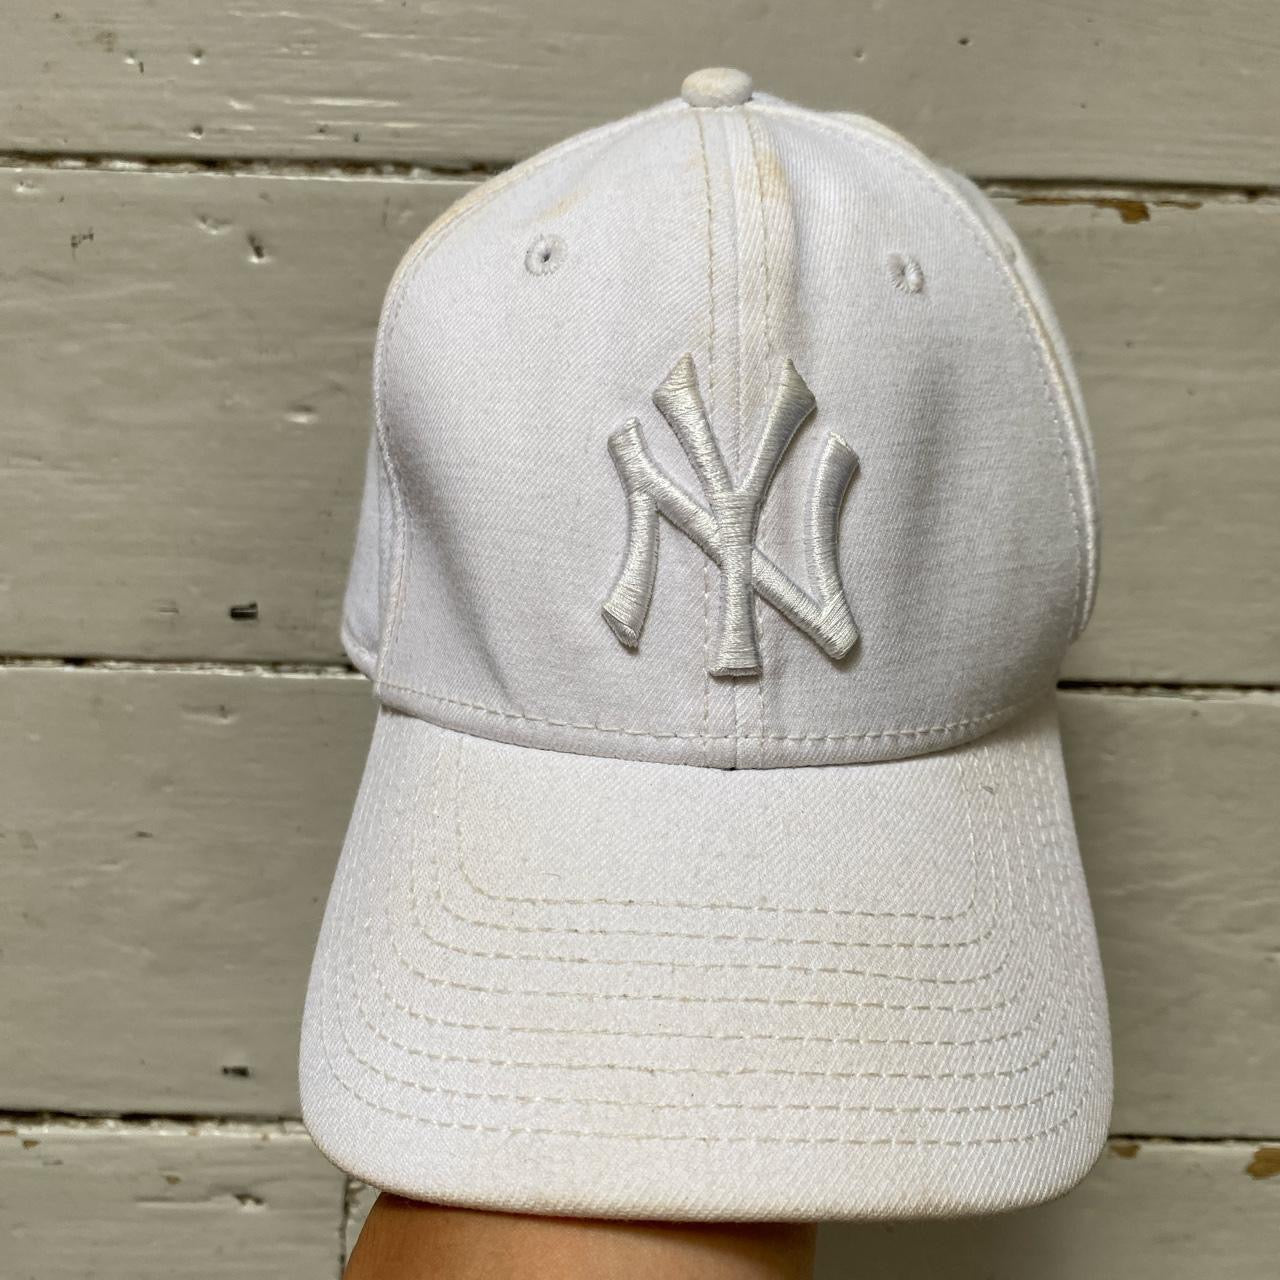 New York Yankees White Cap